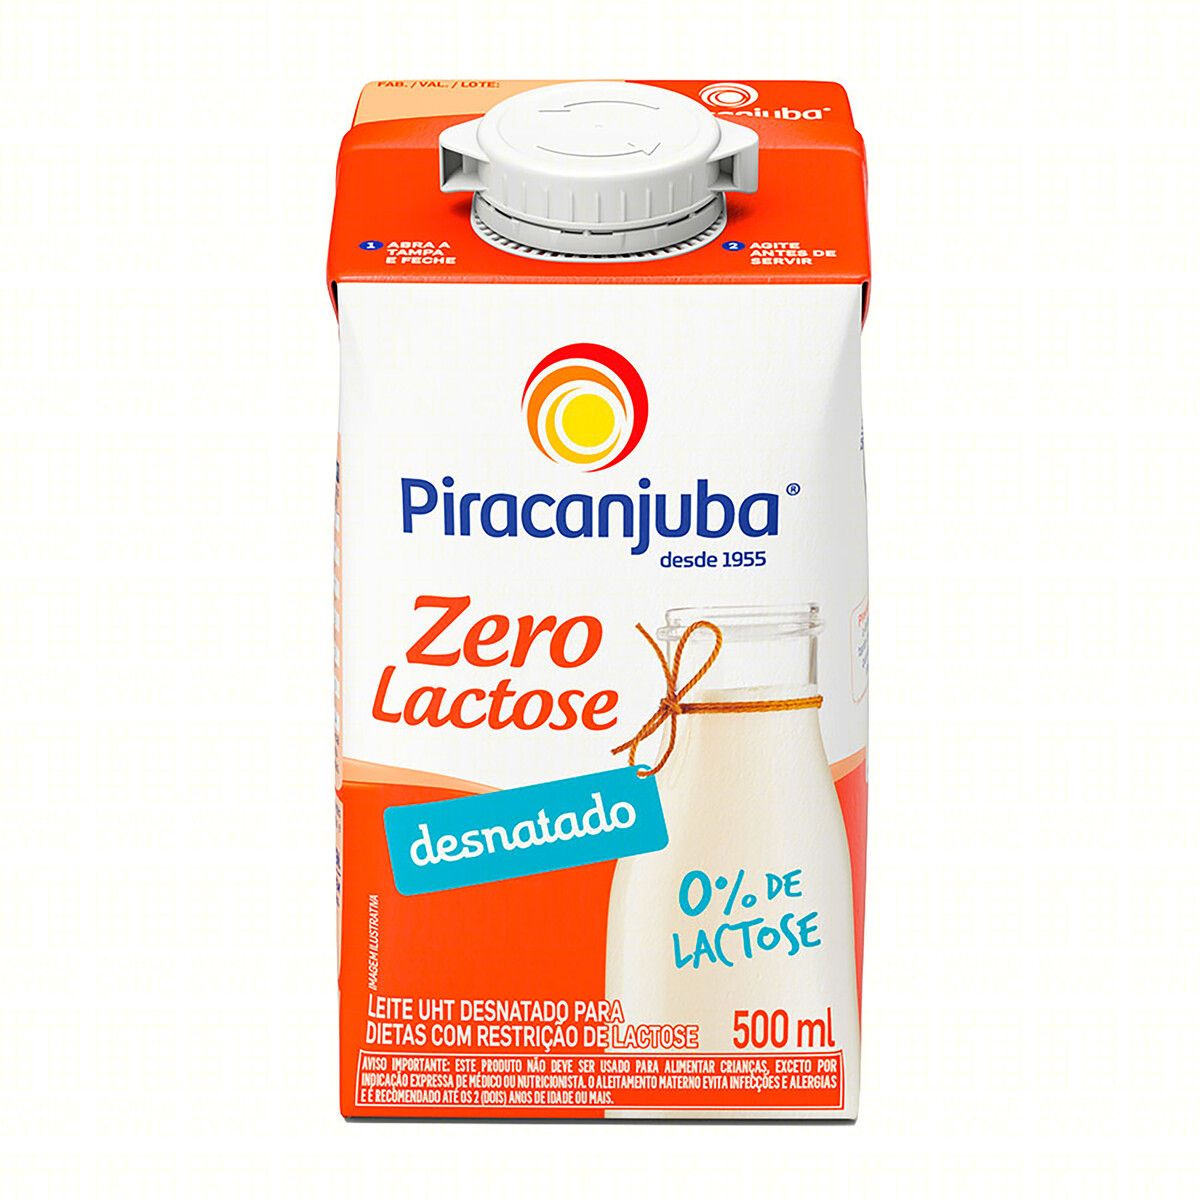 Leite Piracanjuba UHT Desnatado Zero Lactose 500ml